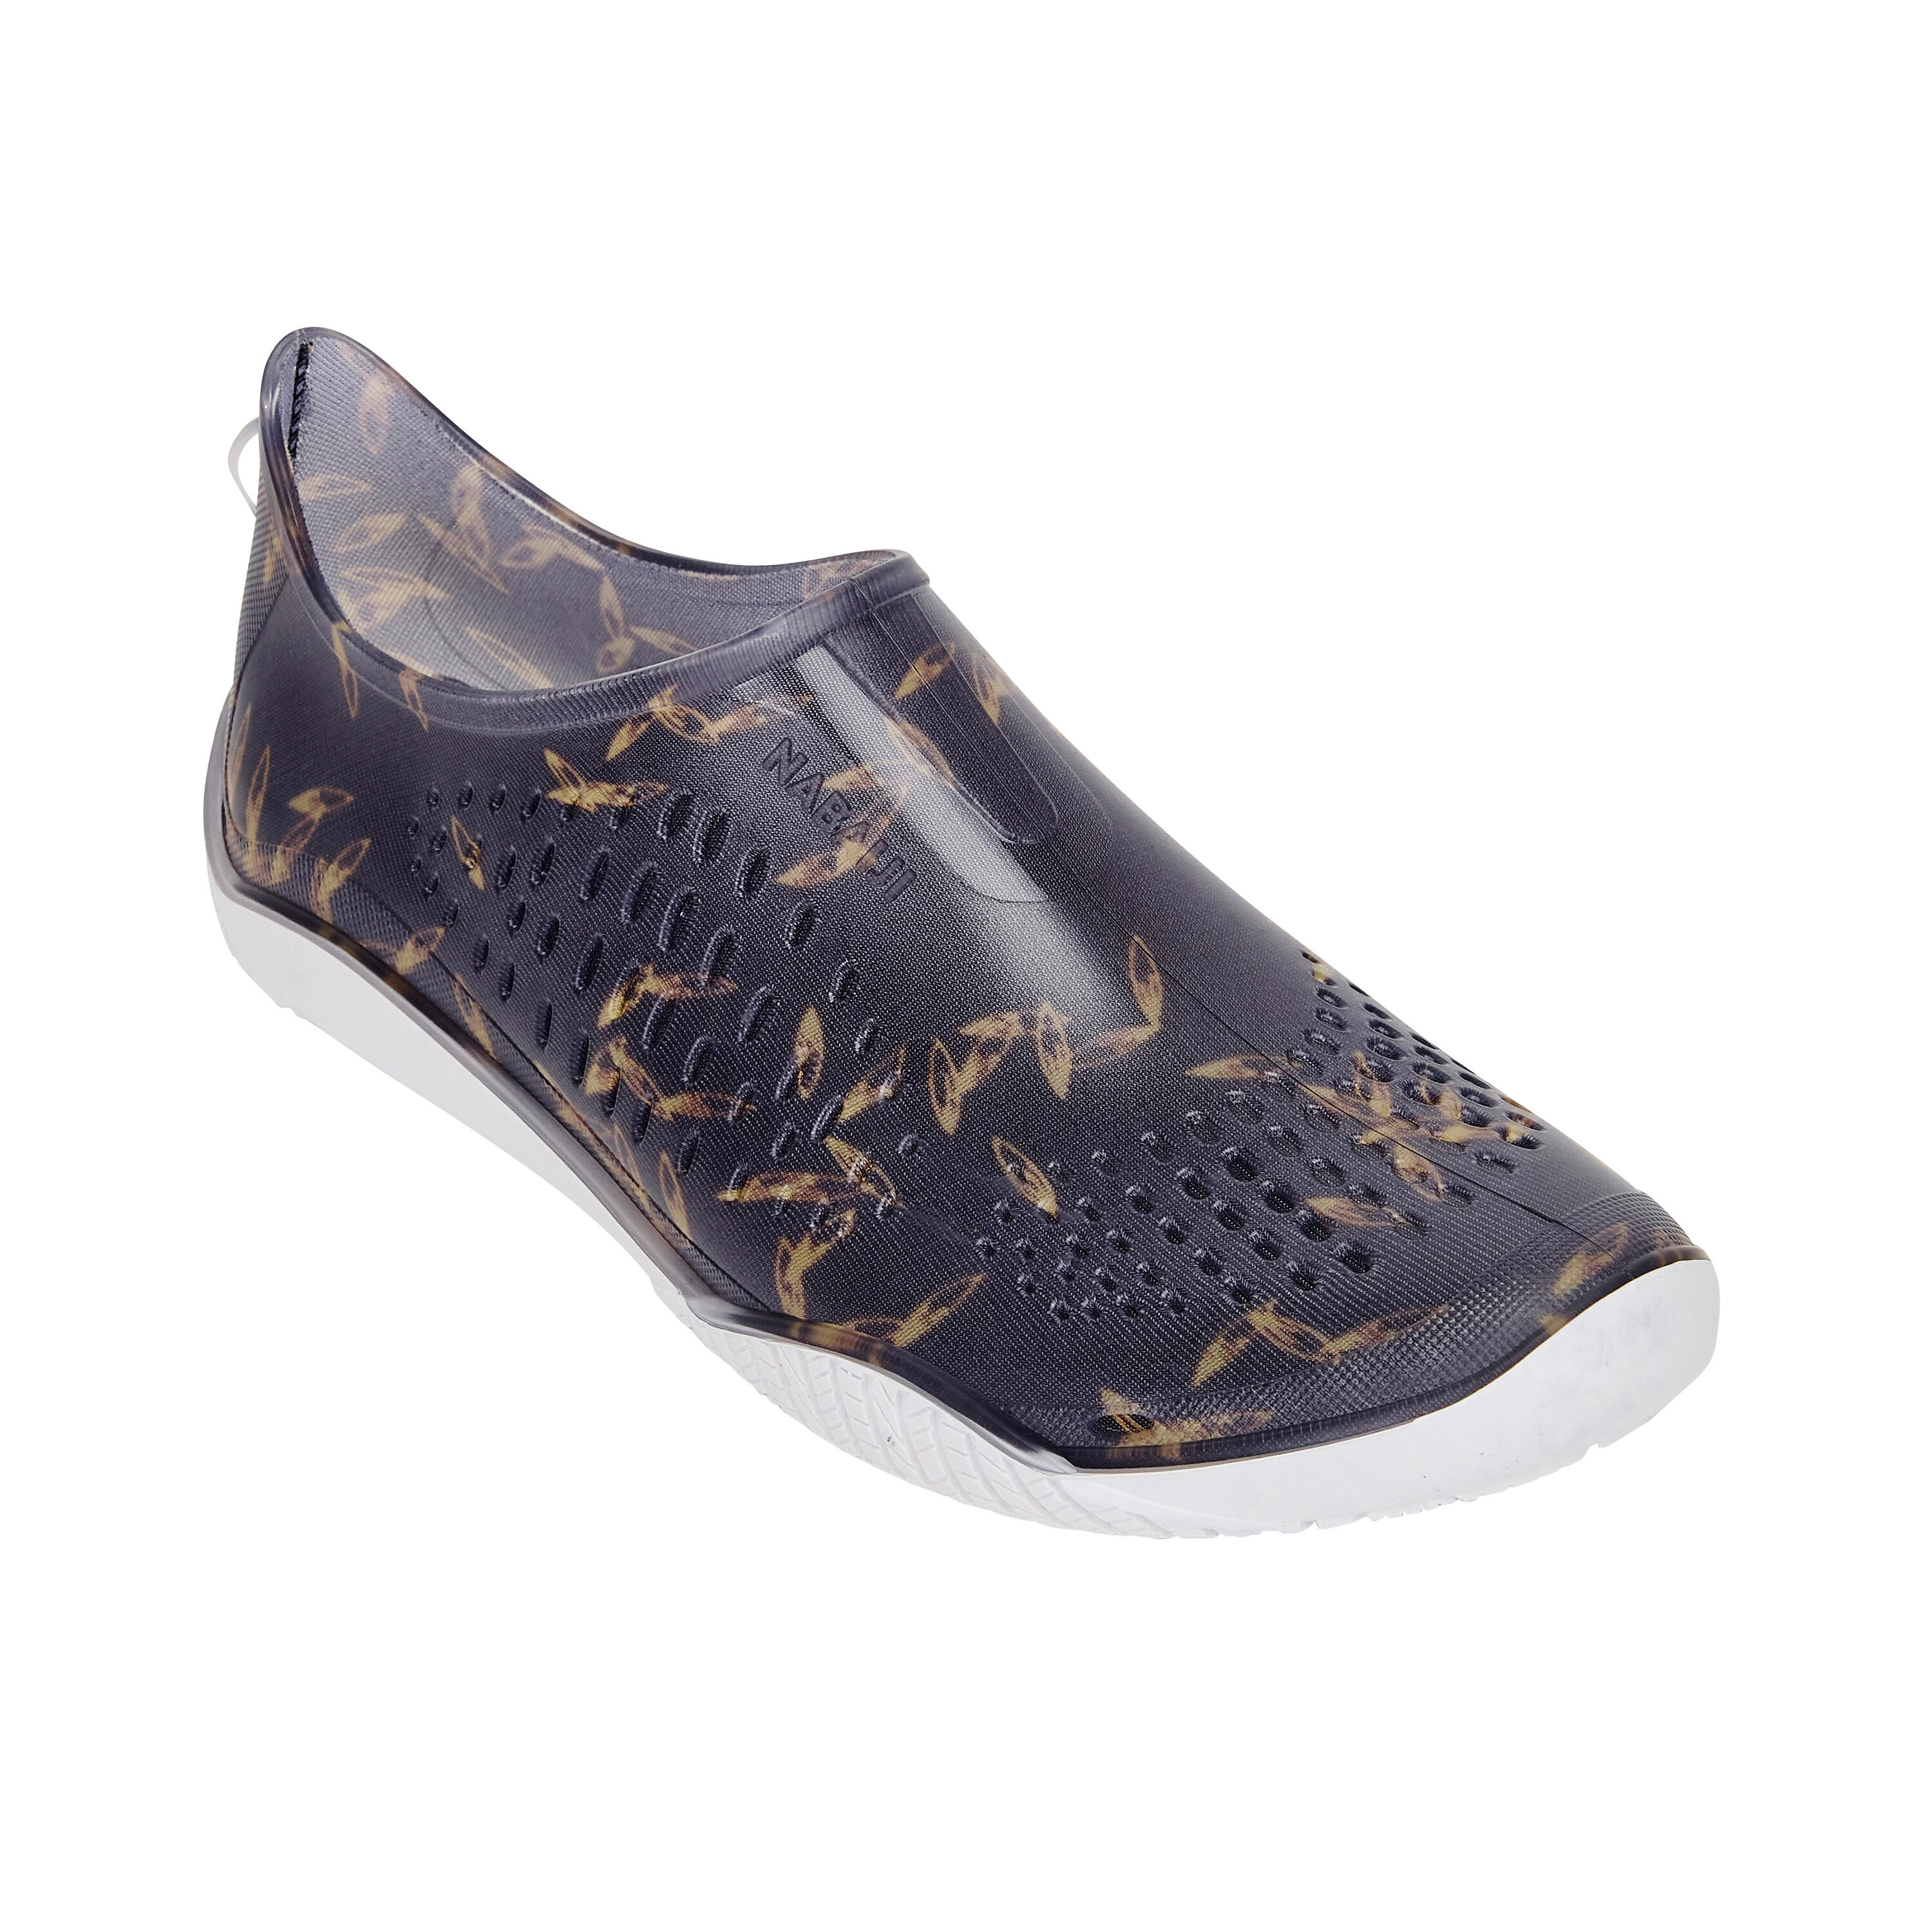 Aquabiking/Aquagym Shoes Fitshoe shoes dif dark blue 2/8